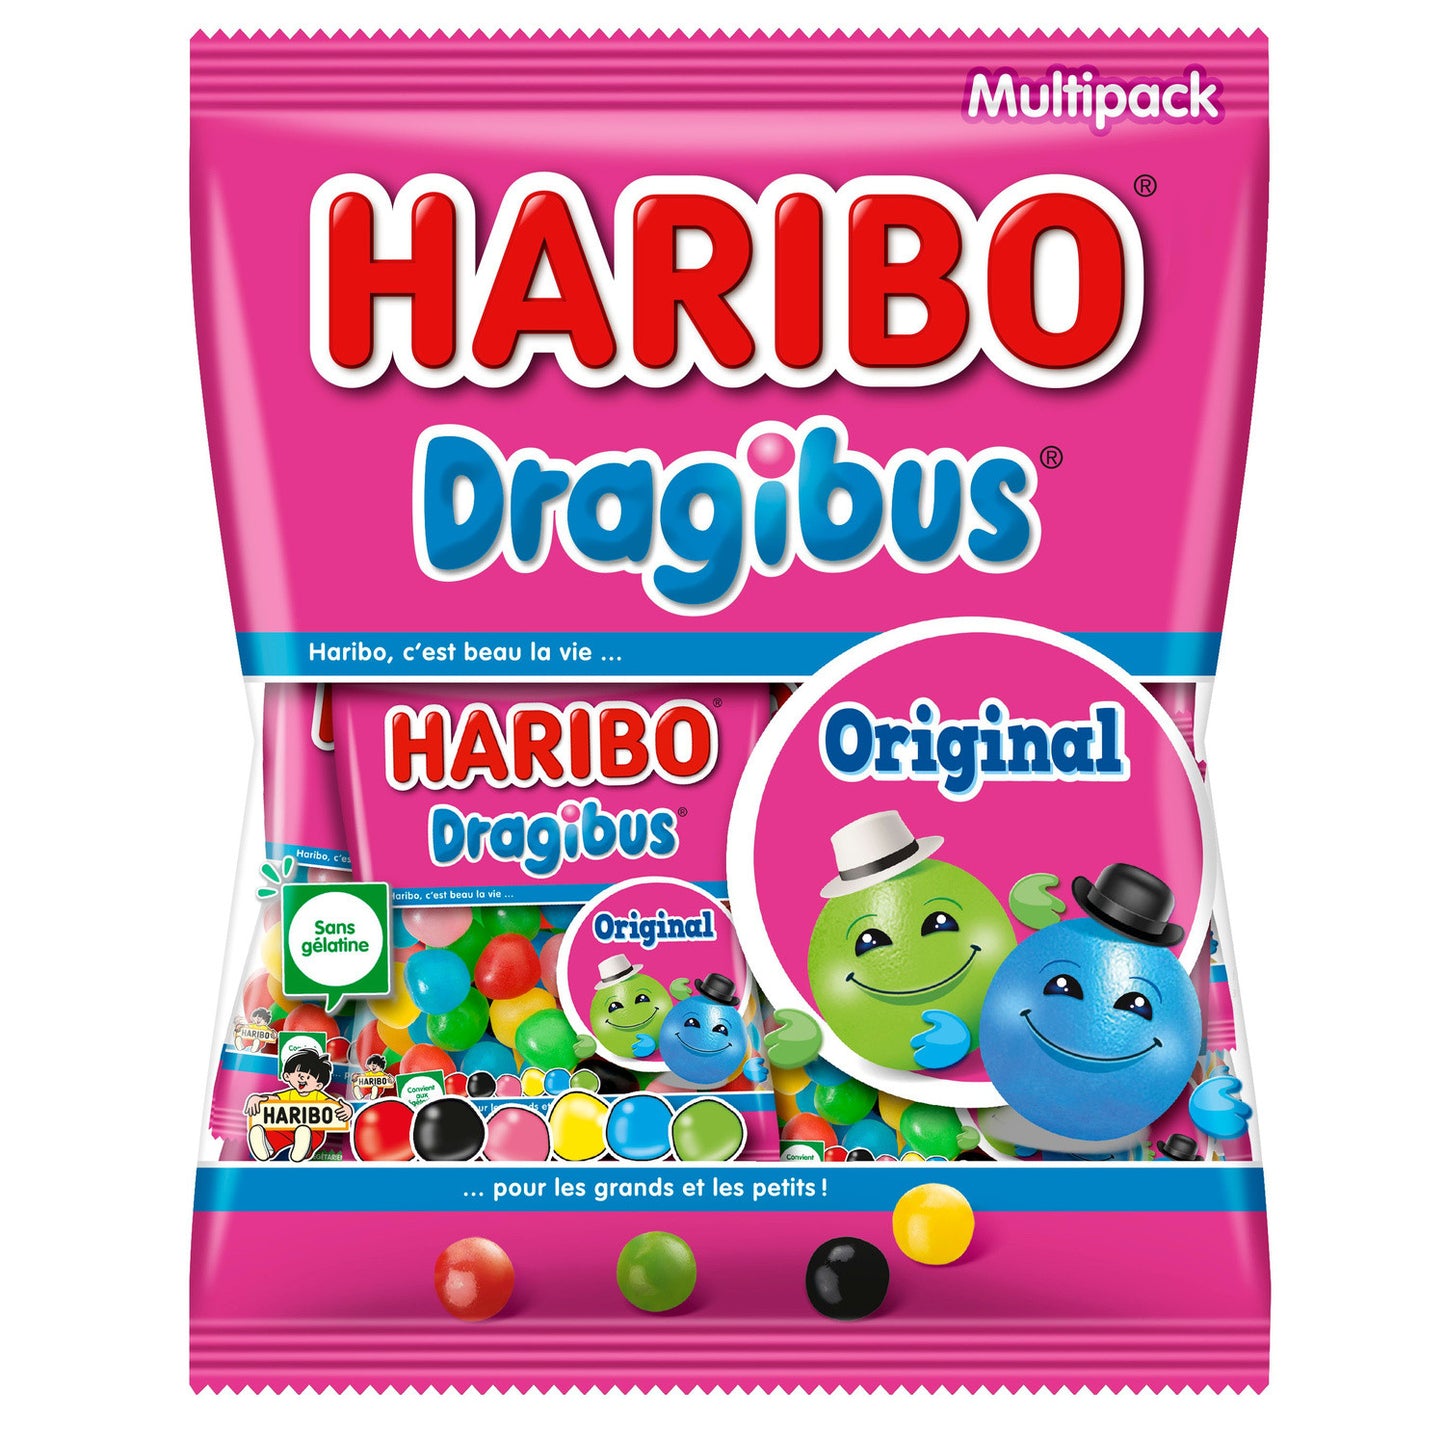 Haribo “Dragibus” (France)